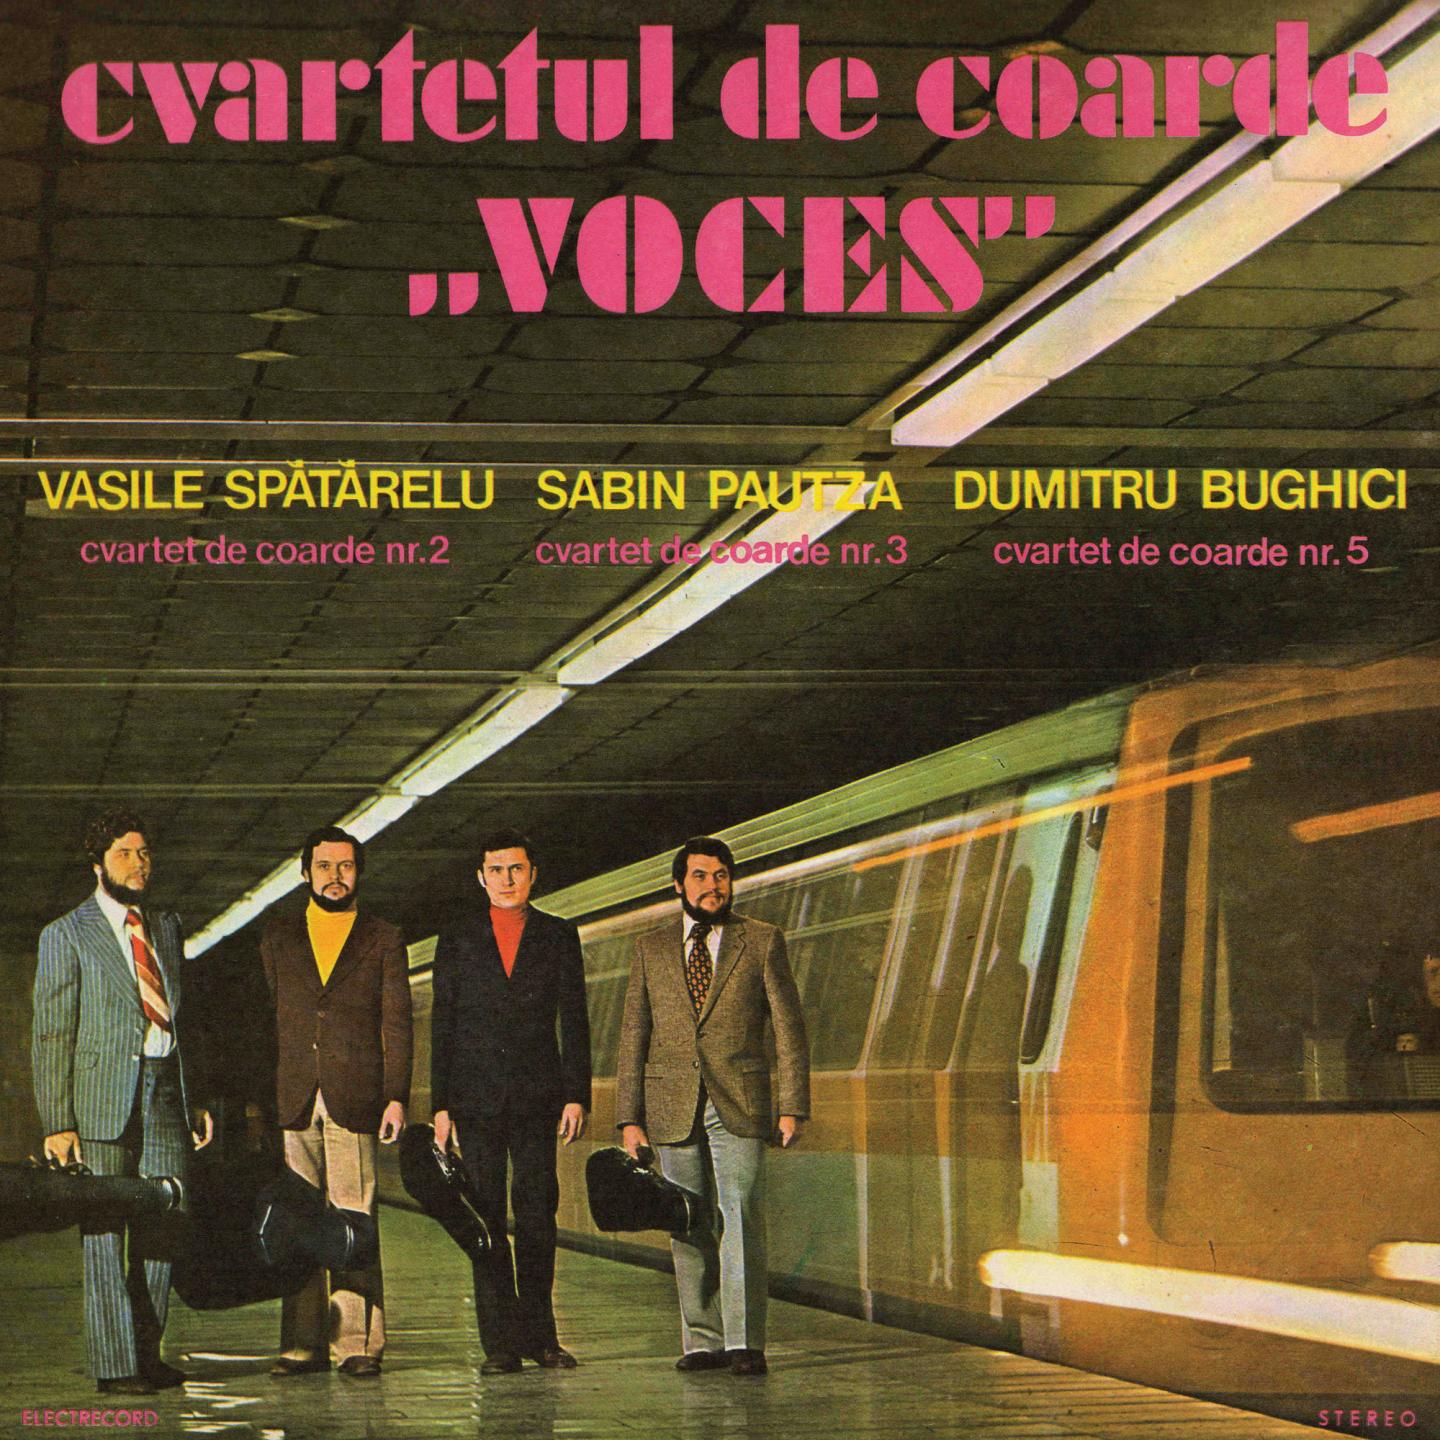 Cvartetul De Coarde Voces